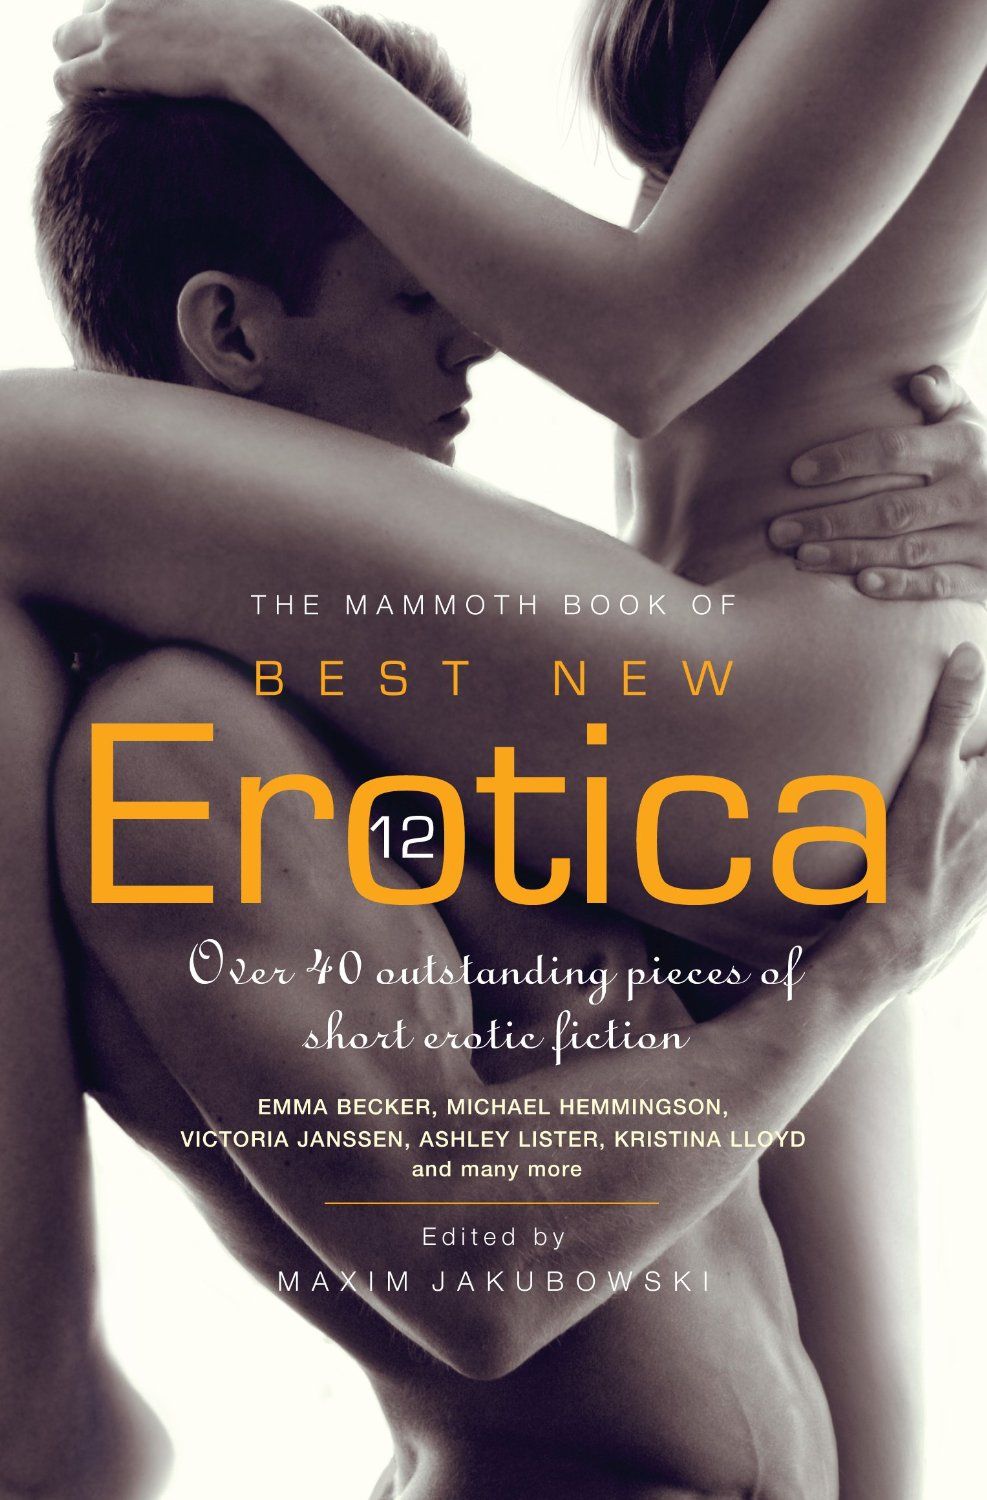 Erotic Illustrated Sex Stories